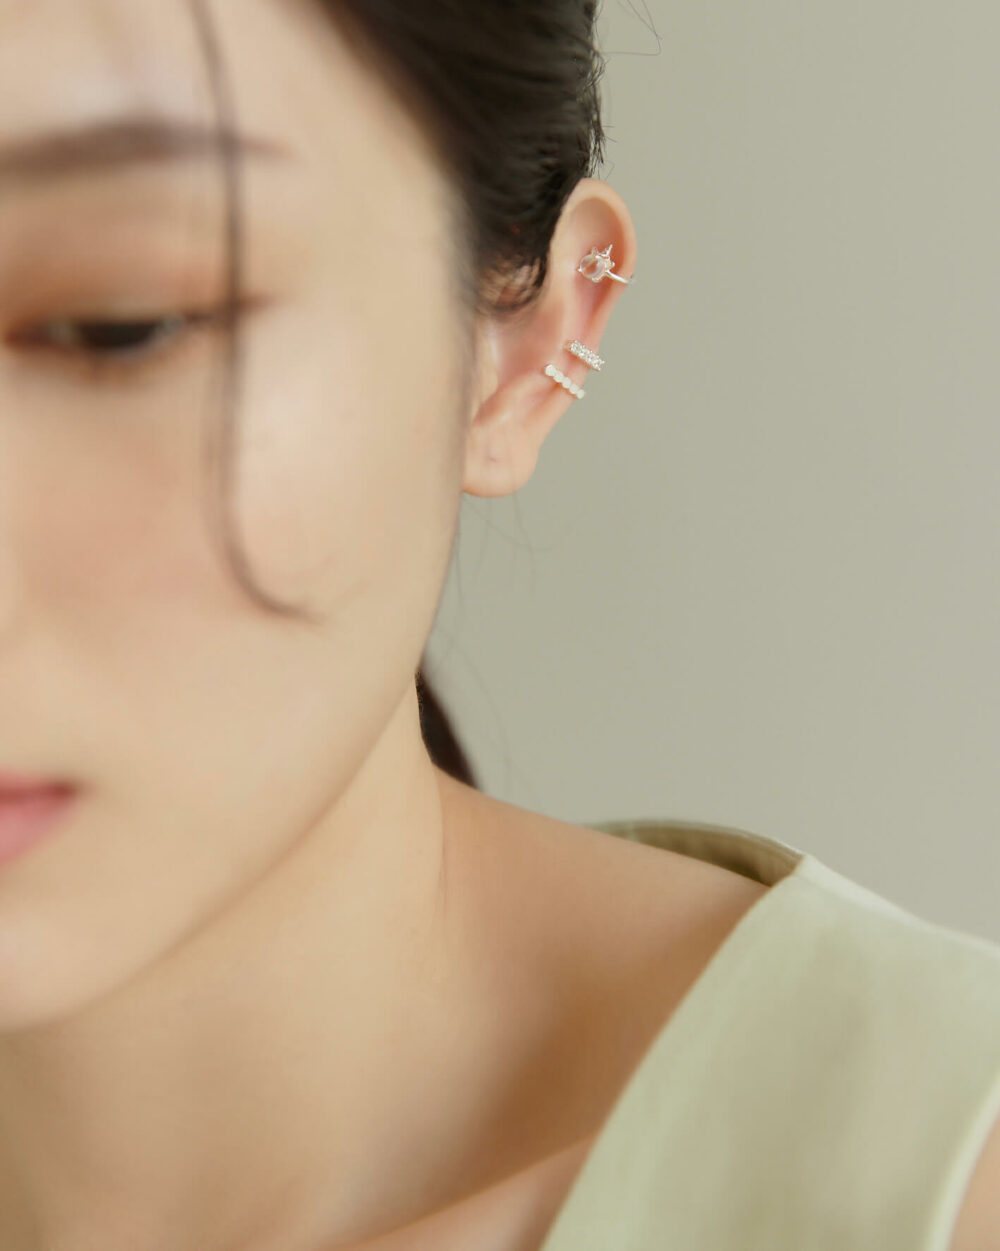 Eco安珂,韓國飾品,韓國耳環,韓國925純銀耳環,925純銀耳環,純銀耳骨夾,925純銀耳骨夾,獨角獸耳骨夾,蛋白石耳骨夾